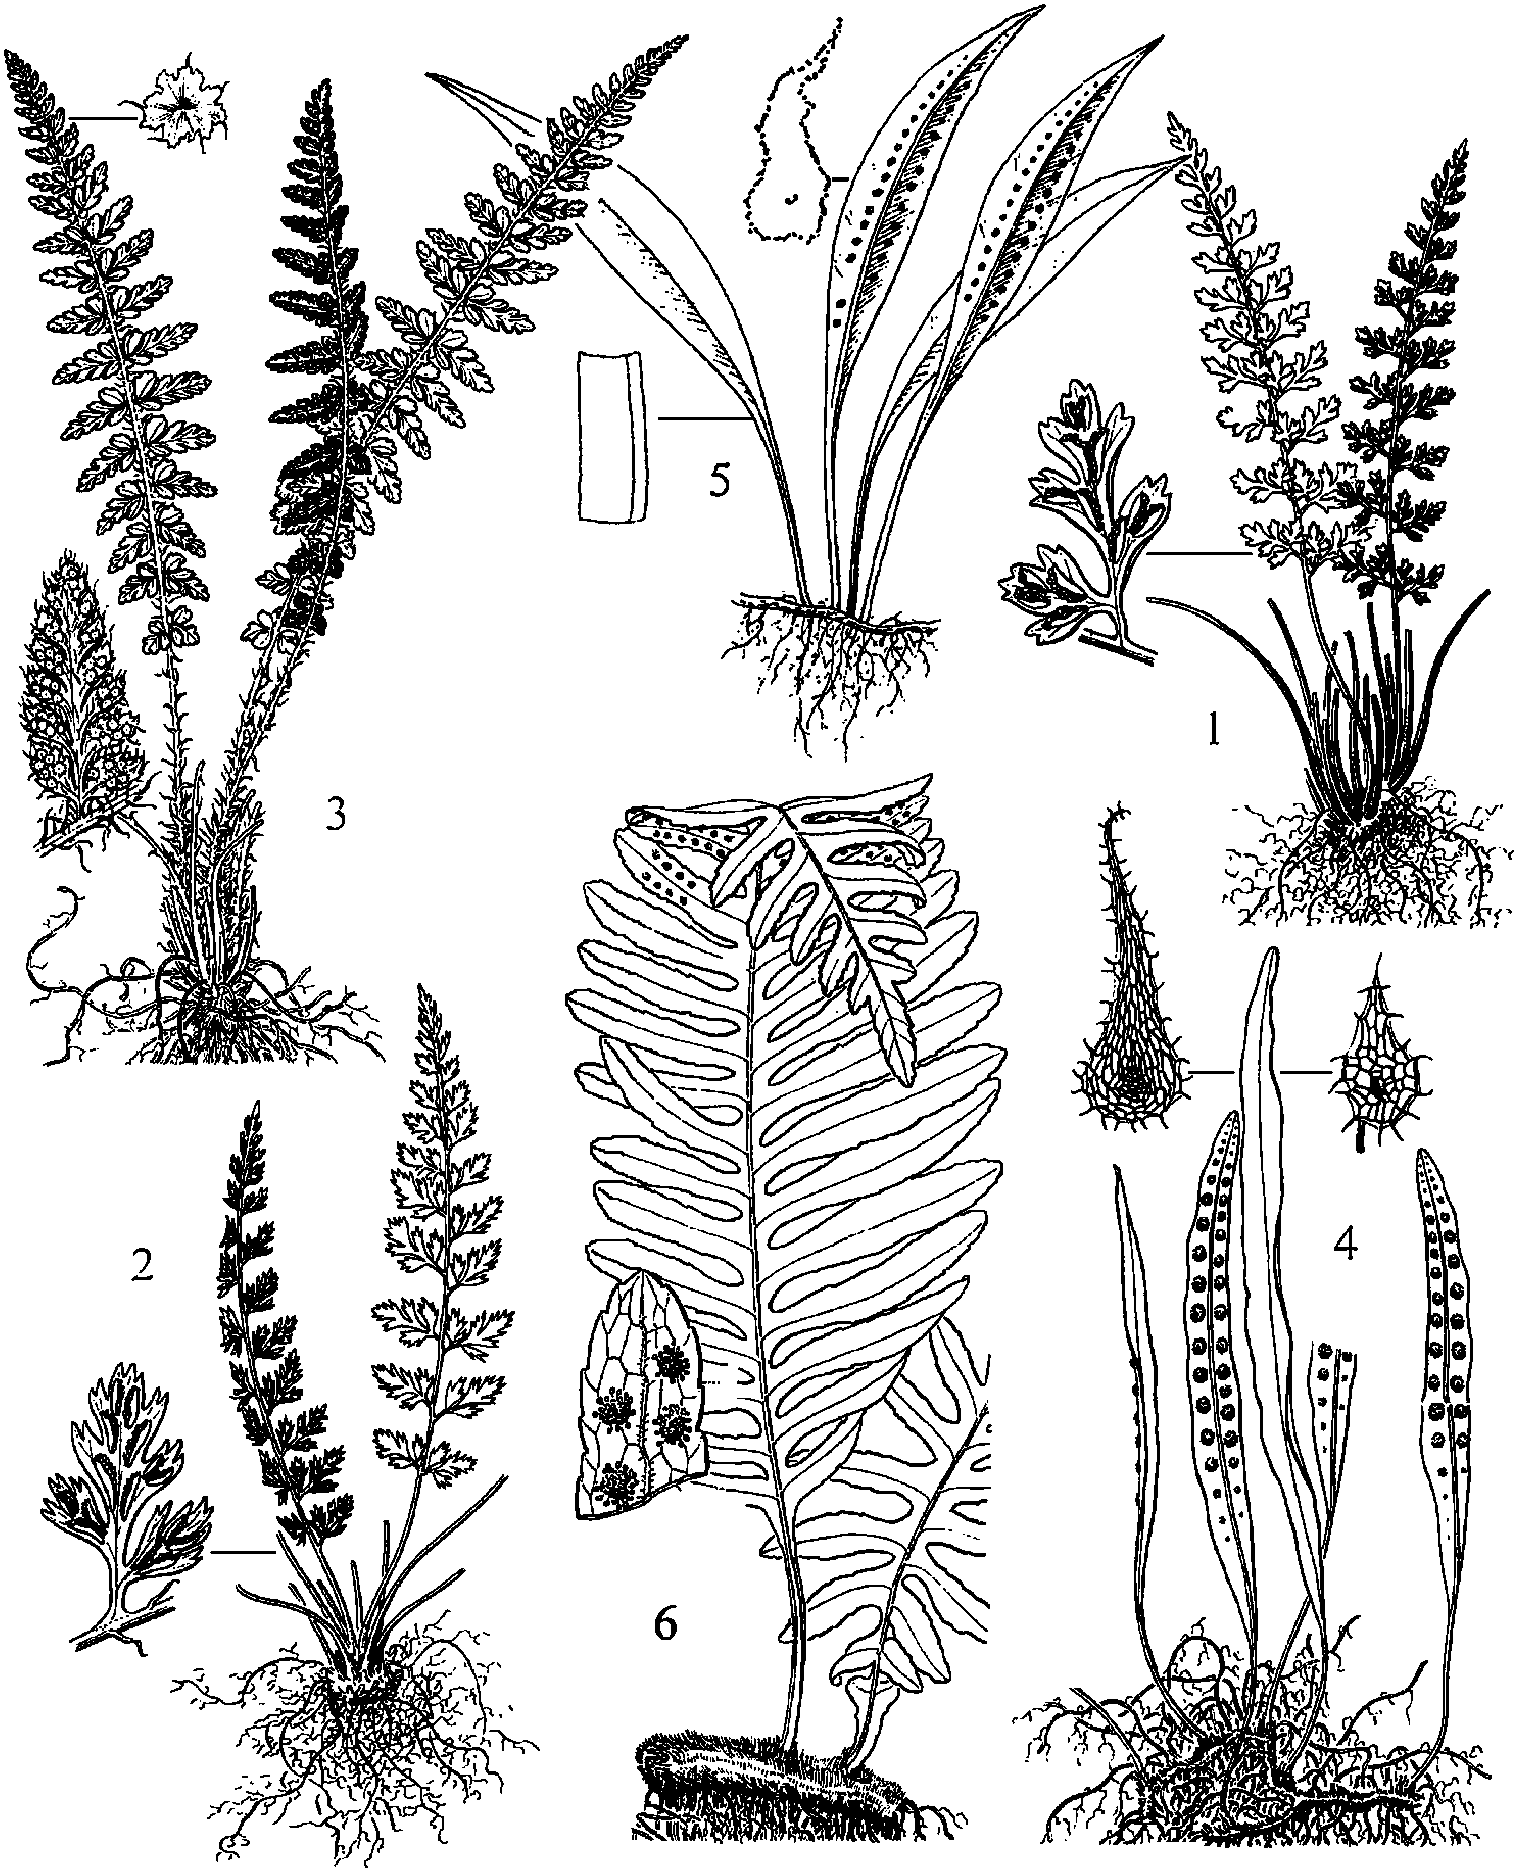 西北铁角蕨anesiichrist植株,羽片及孢子囊群;3